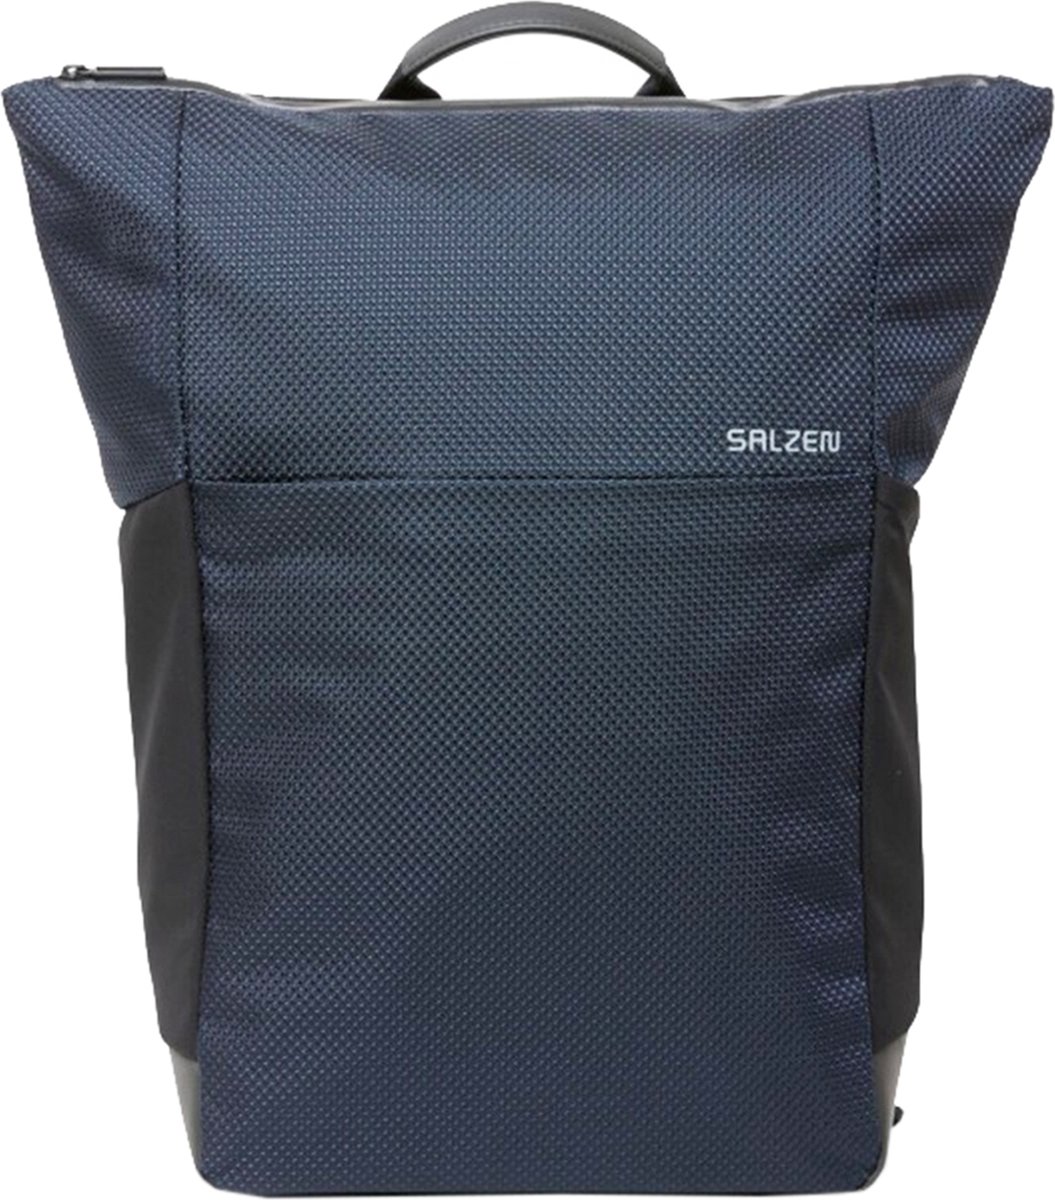 Salzen Rugtas / Rugtas / Schooltas - Plain Backpack - 22 Liter - Blauw